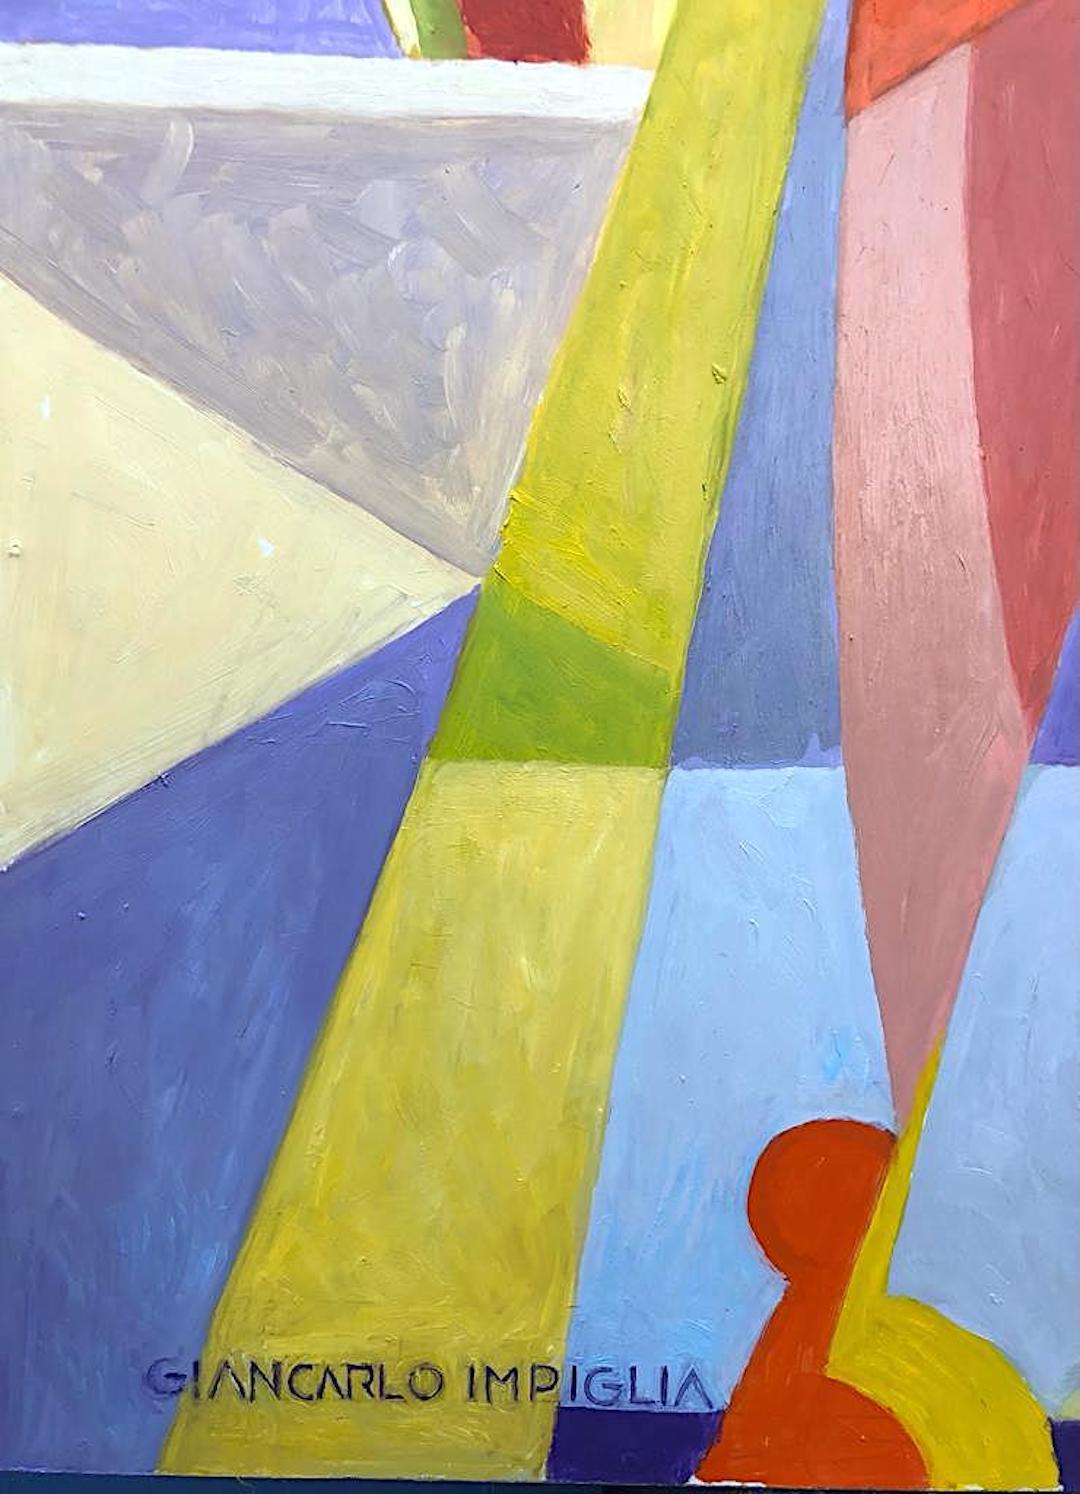 Schönes Ölgemälde im kubistischen Stil „A Day in the Sun“ von Impiglia – Painting von Giancarlo Impiglia